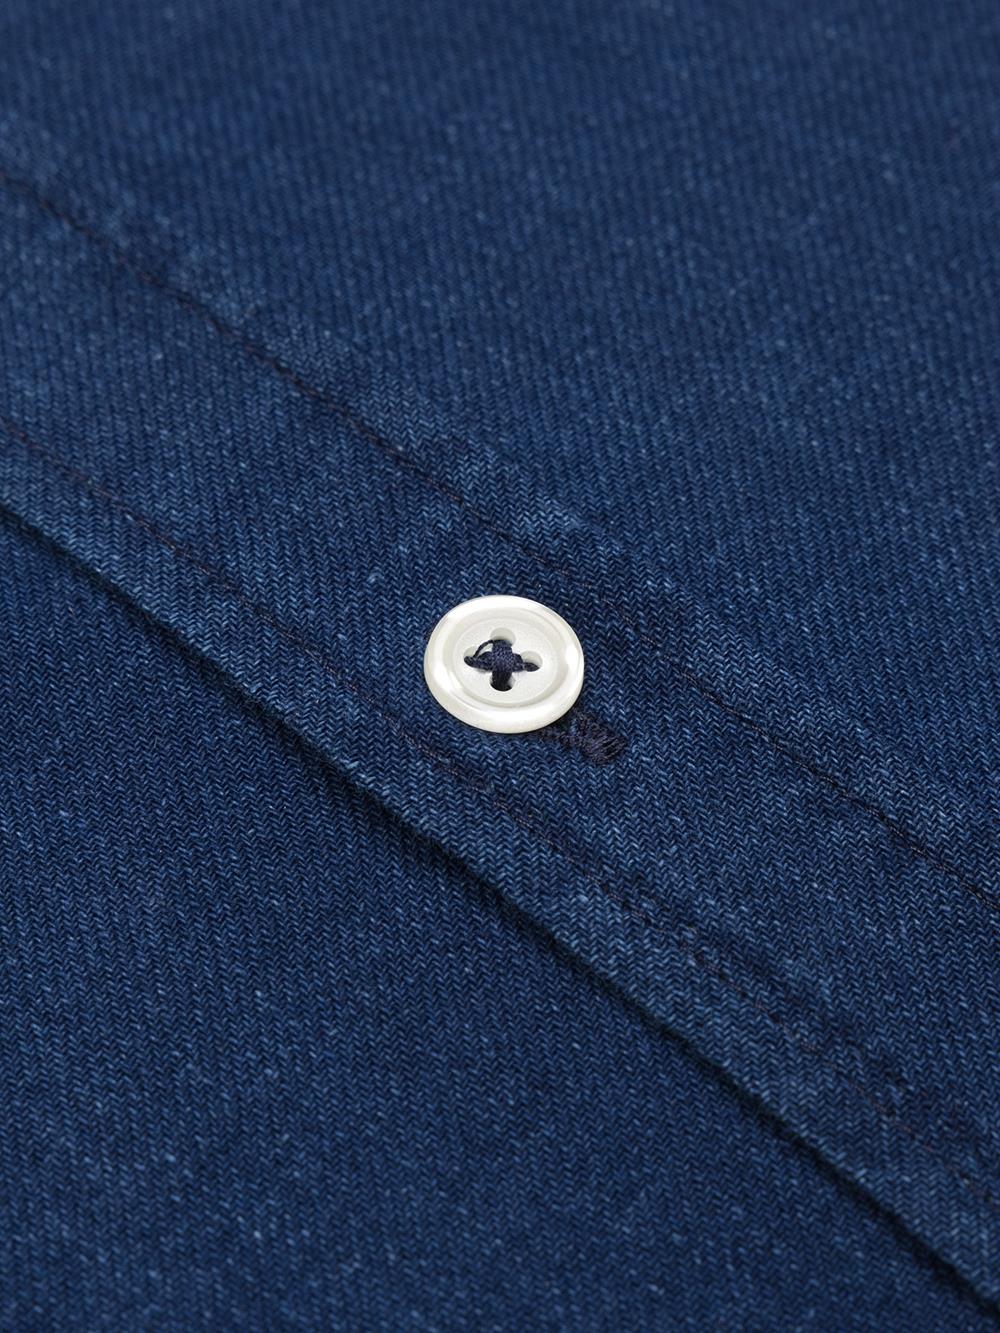 Erwin-Taillierthemd aus Jeansstoff - Button down kragen